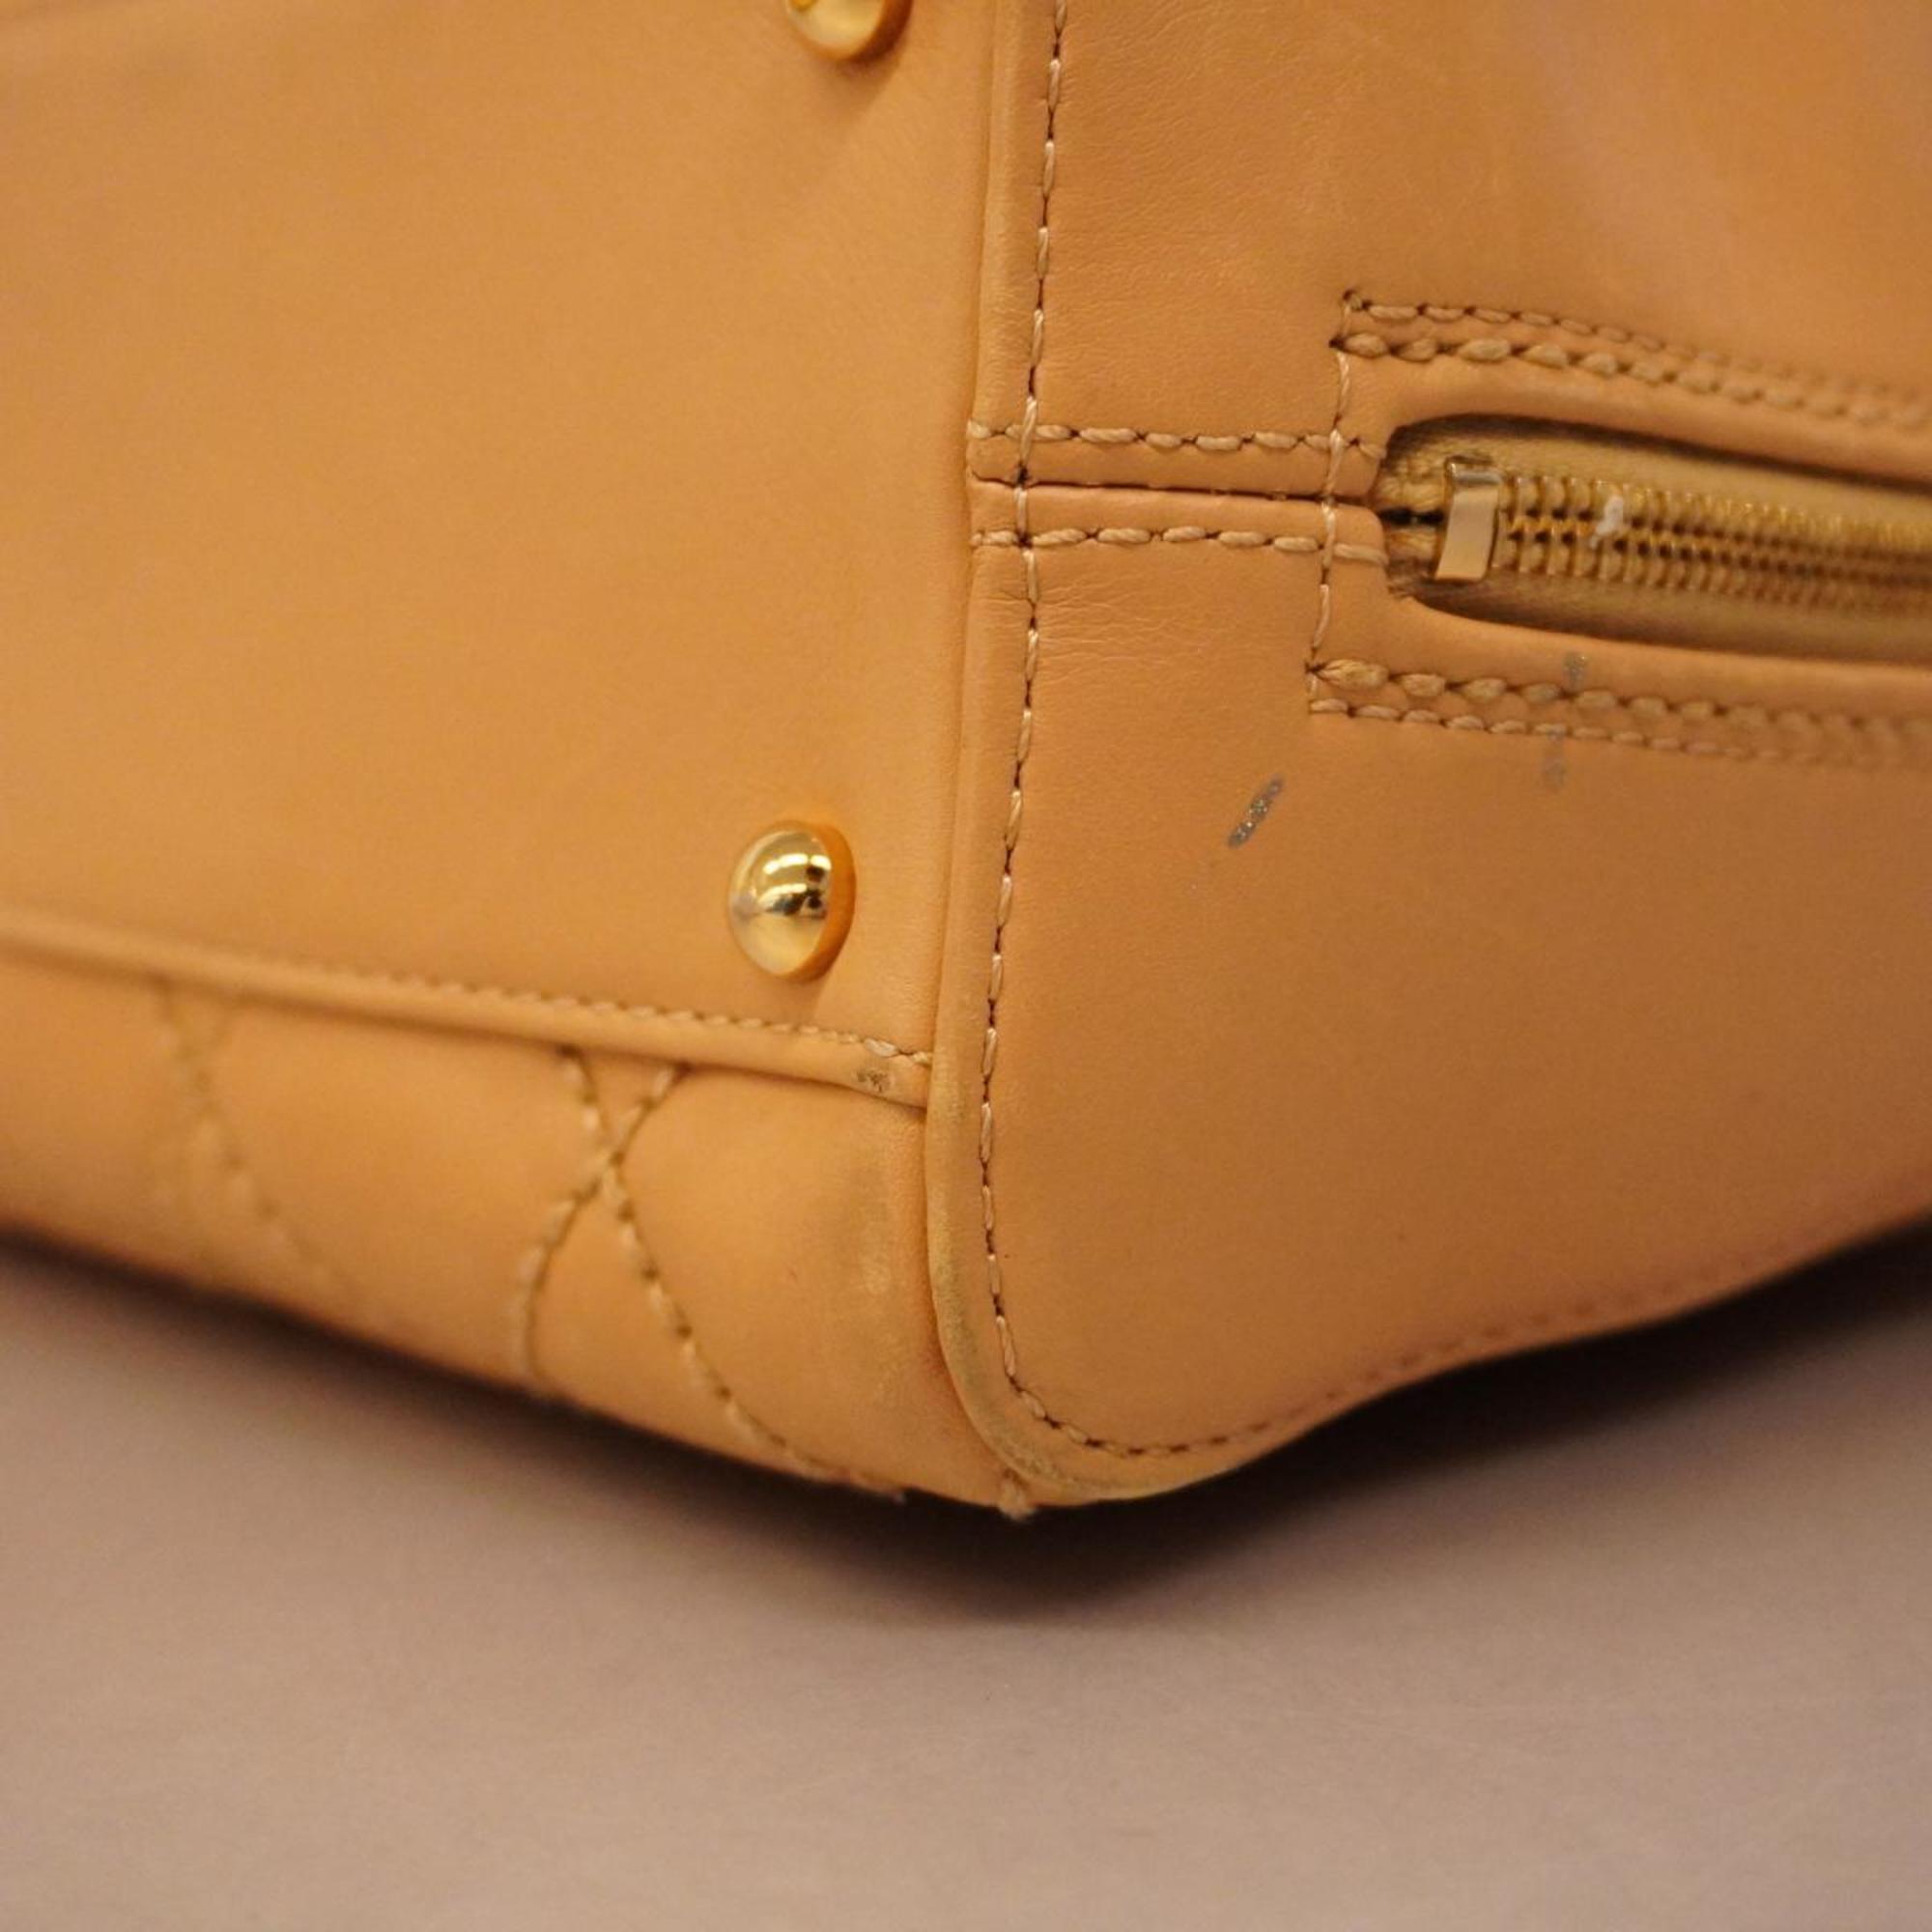 Chanel handbag wild stitch lambskin beige ladies